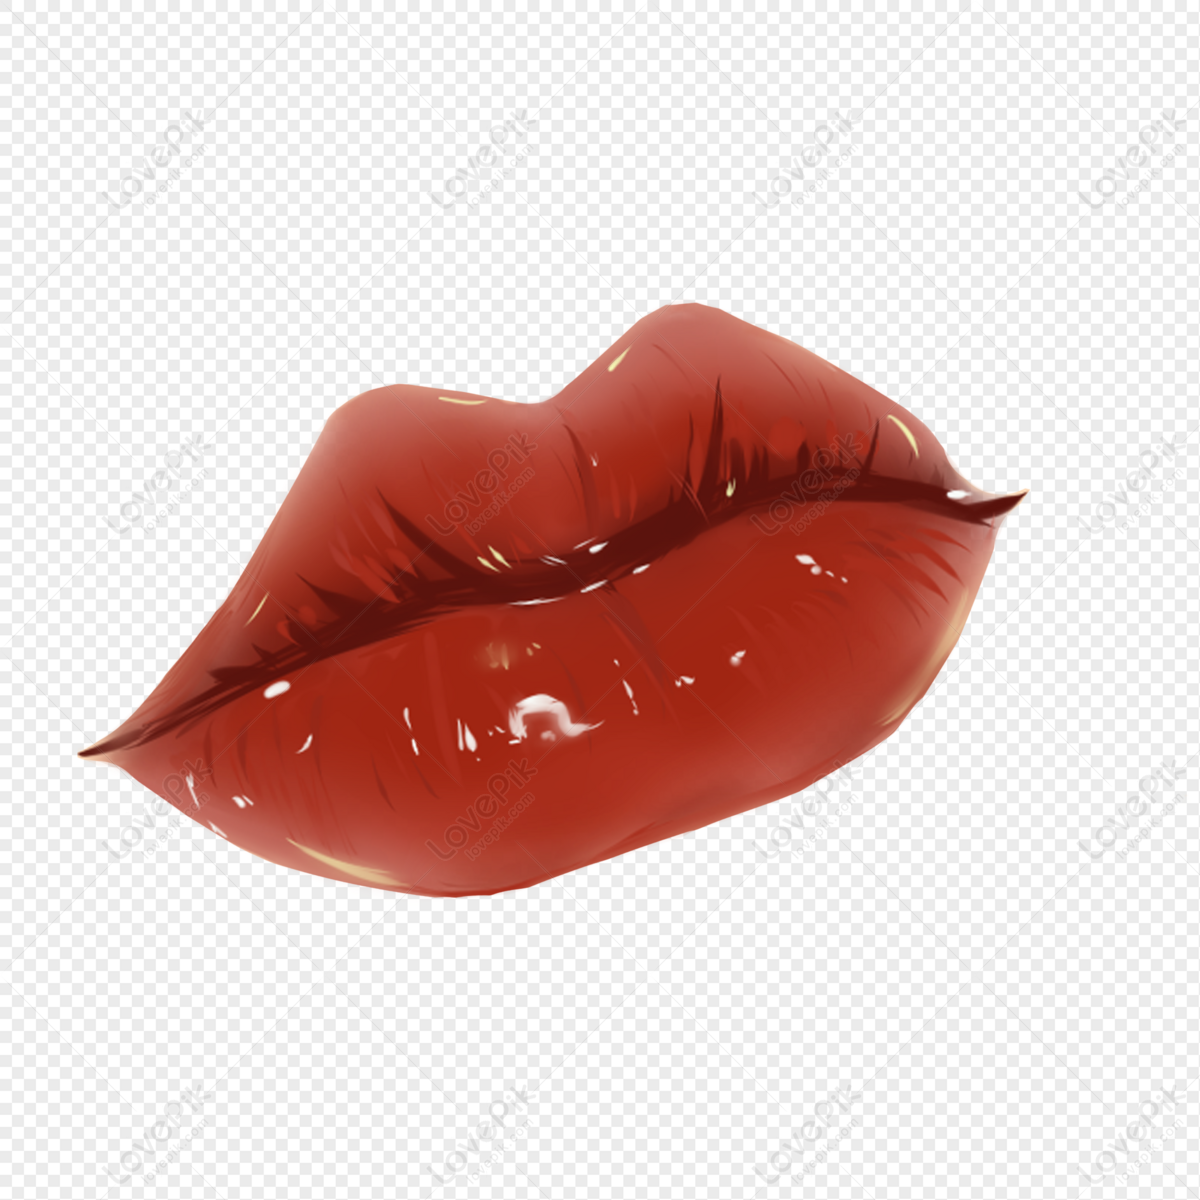 Фото Сексуальные губы, более 93 качественных бесплатных стоковых фото